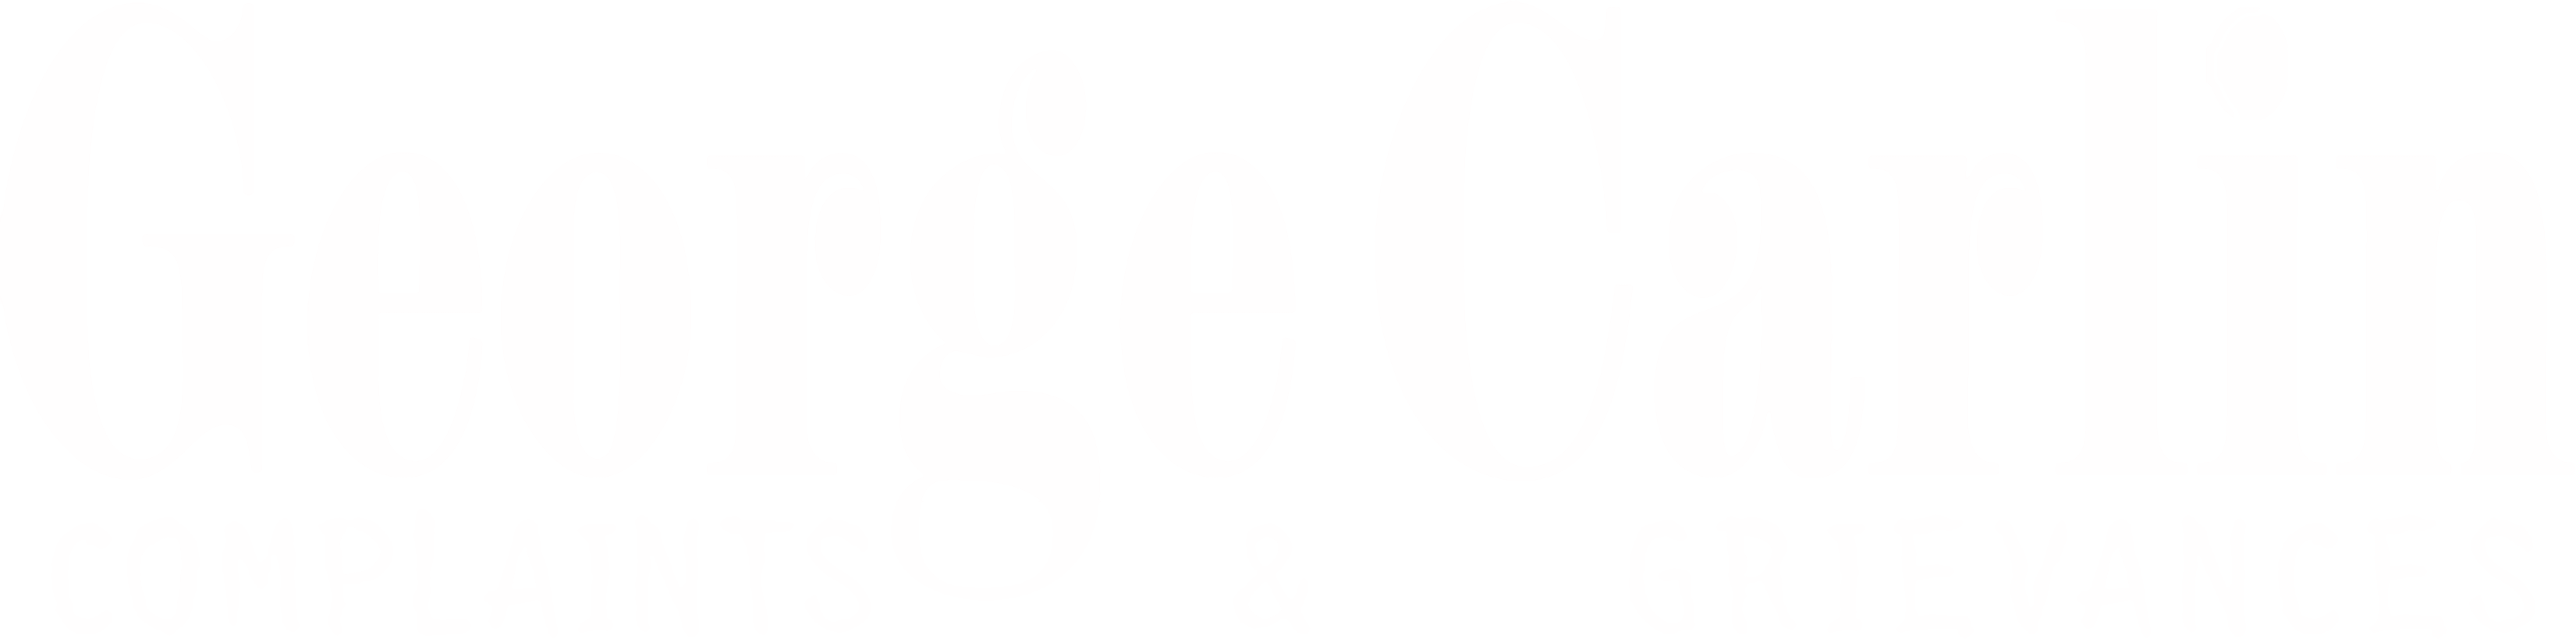 George Carlin: Complaints & Grievances logo